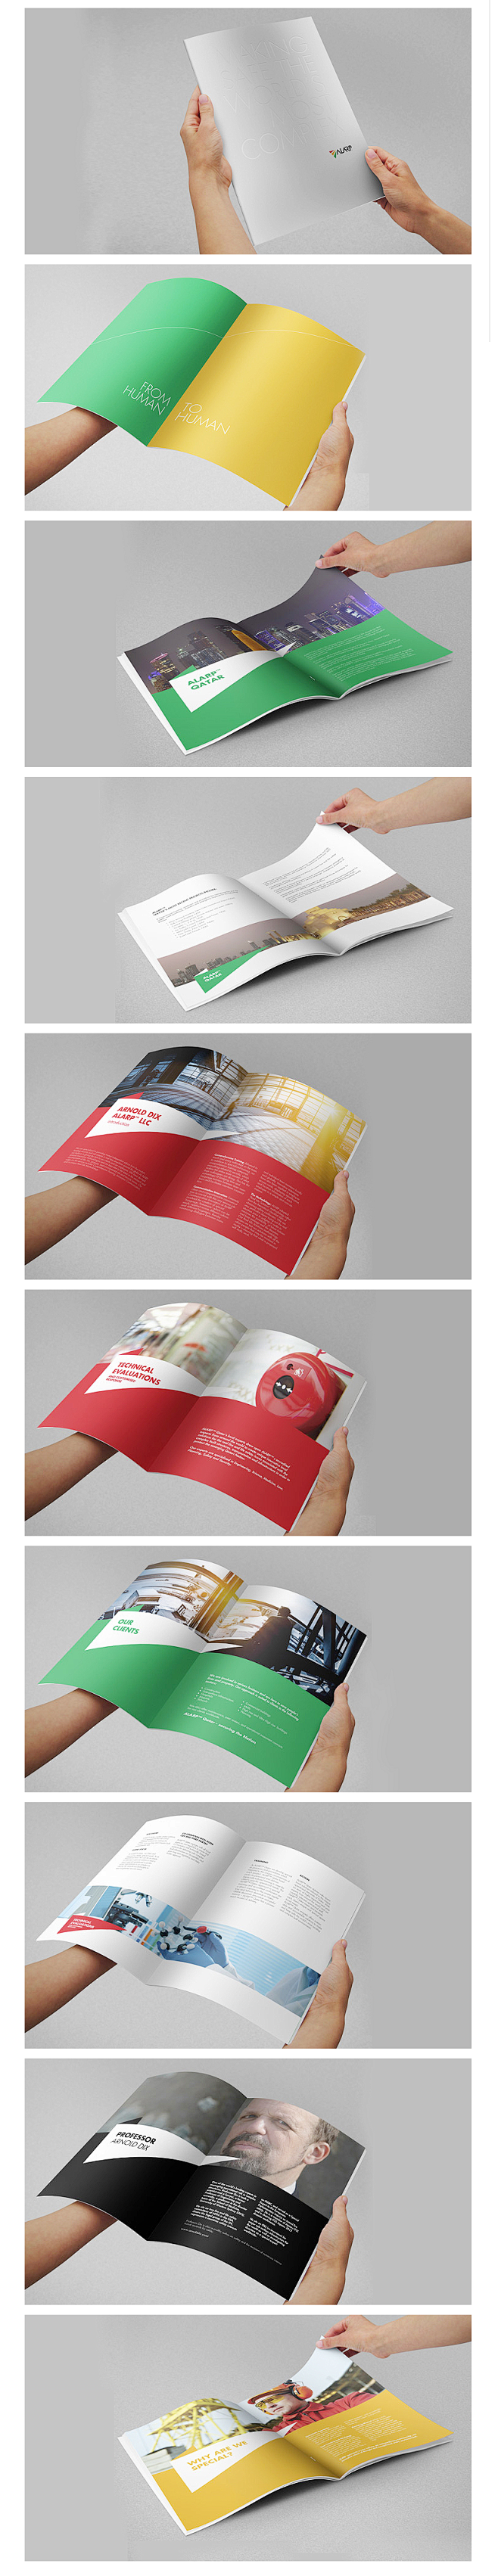 企业画册设计-所有案例-zonebran...